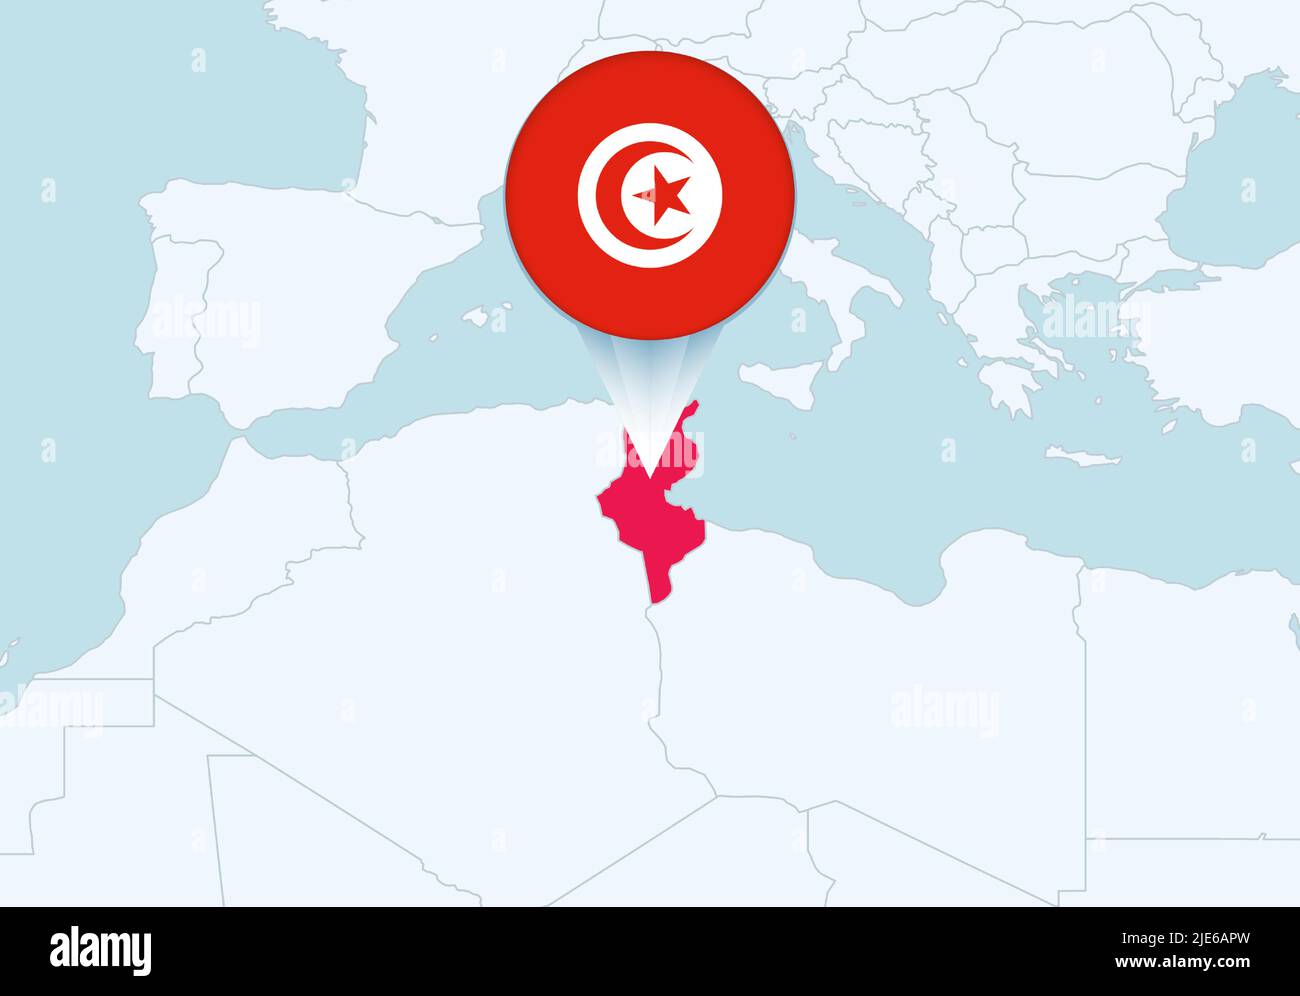 Afrika mit ausgewählter tunesischer Karte und tunesischem Flaggensymbol. Vektorkarte und Flagge. Stock Vektor